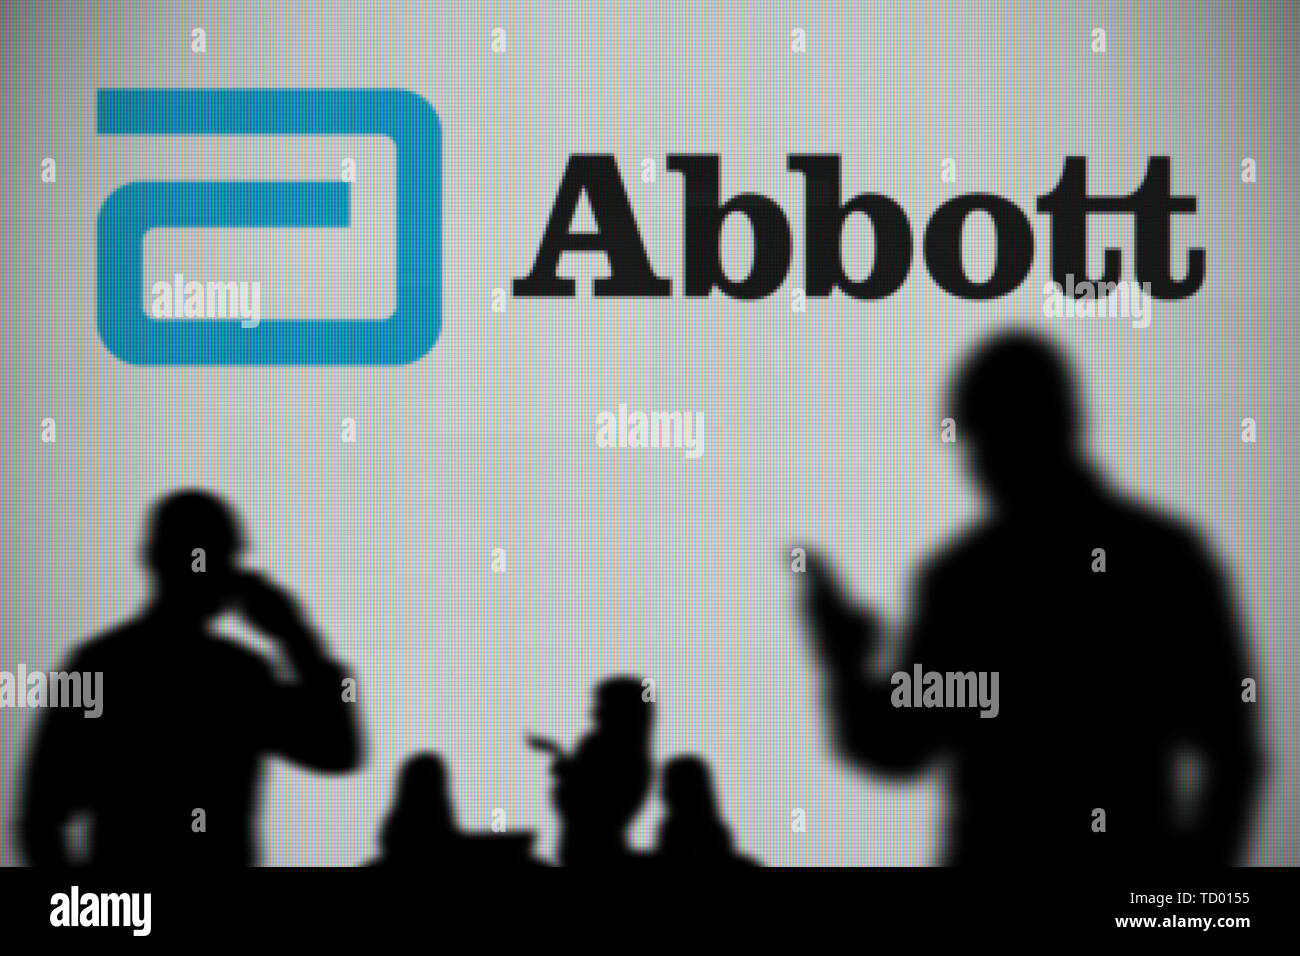 Los laboratorios Abbott logo es visto en una pantalla LED en el fondo mientras una silueta persona utiliza un smartphone en primer plano (uso Editorial Foto de stock